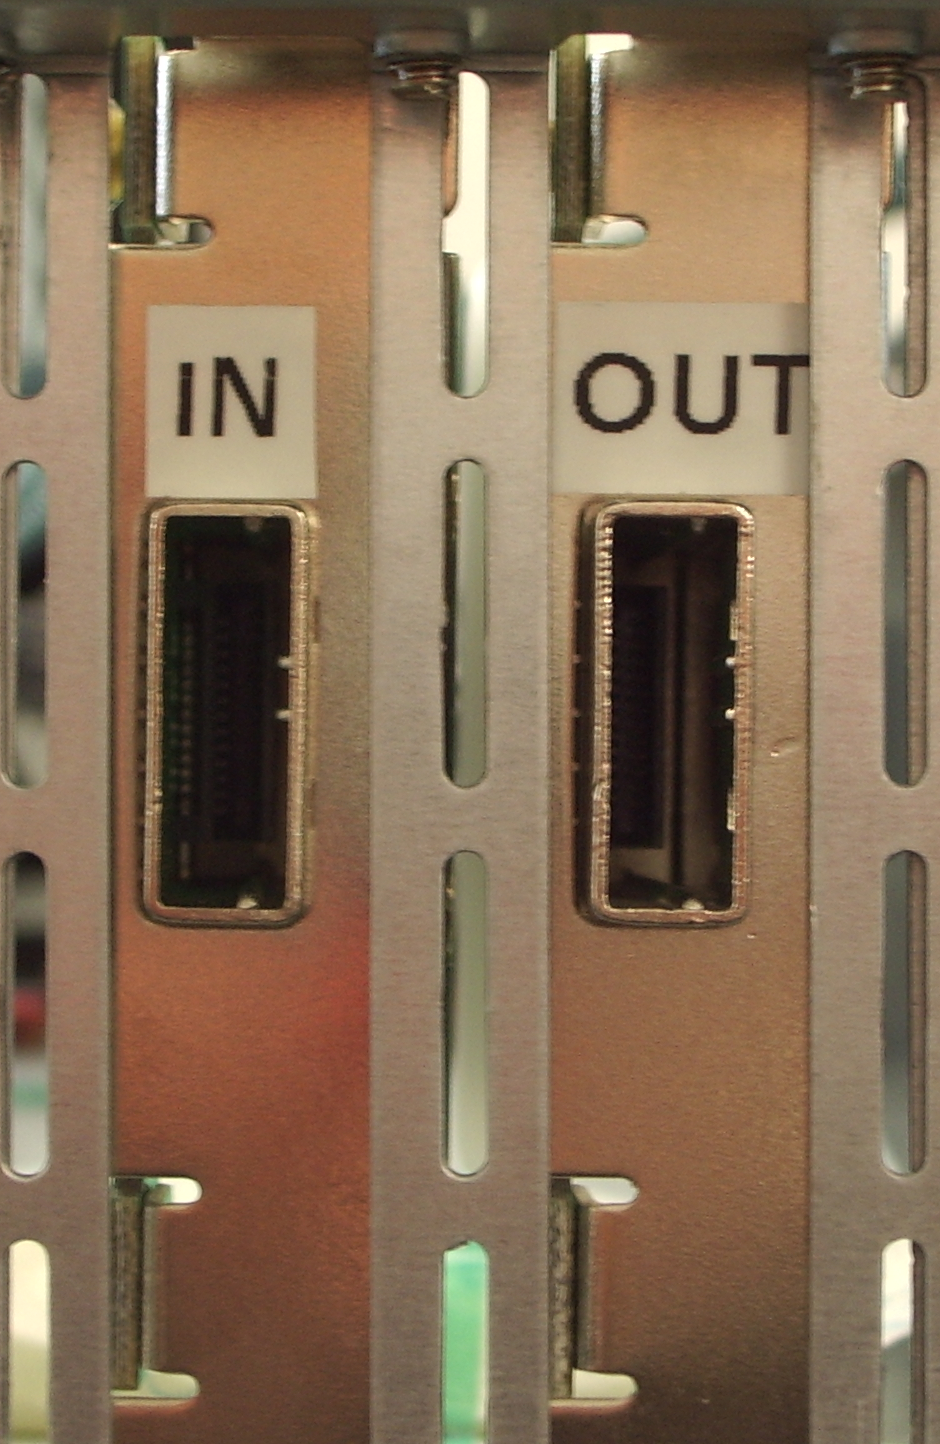 Wie verbinde ich das Kabel mit dem JBOD-System? Unsere JBOD-Systeme haben zwei Ports. Die Ports sind beschriftet mit "in" bzw. "out". Verbinden Sie das Kabel mit dem "out" Port.